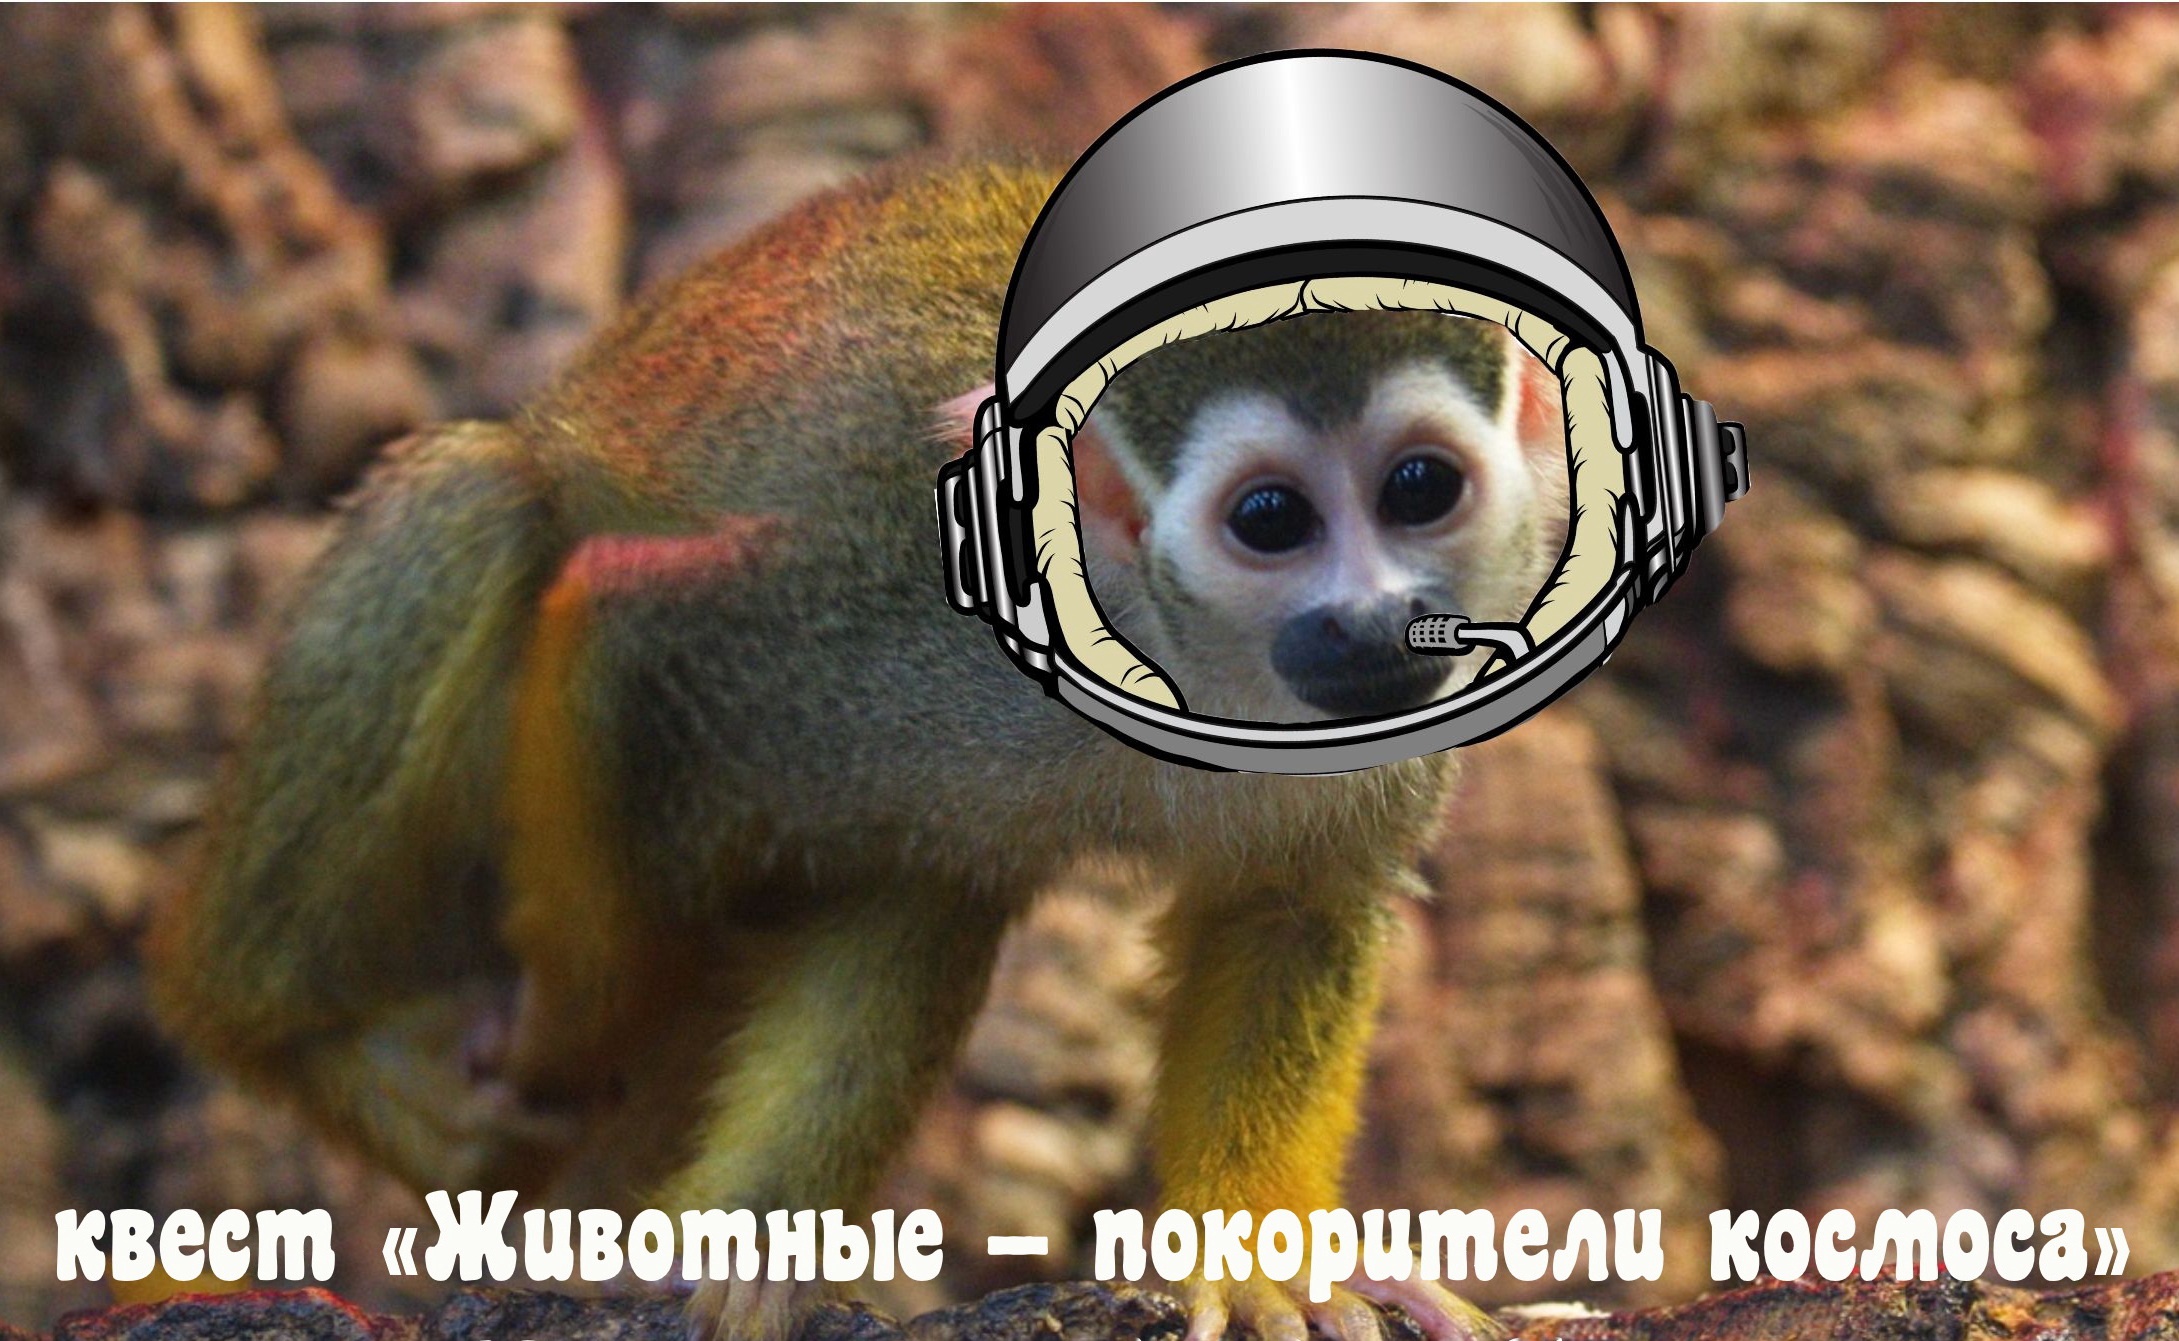 В Самарском зоопарке расскажут про животных-покорителей космоса